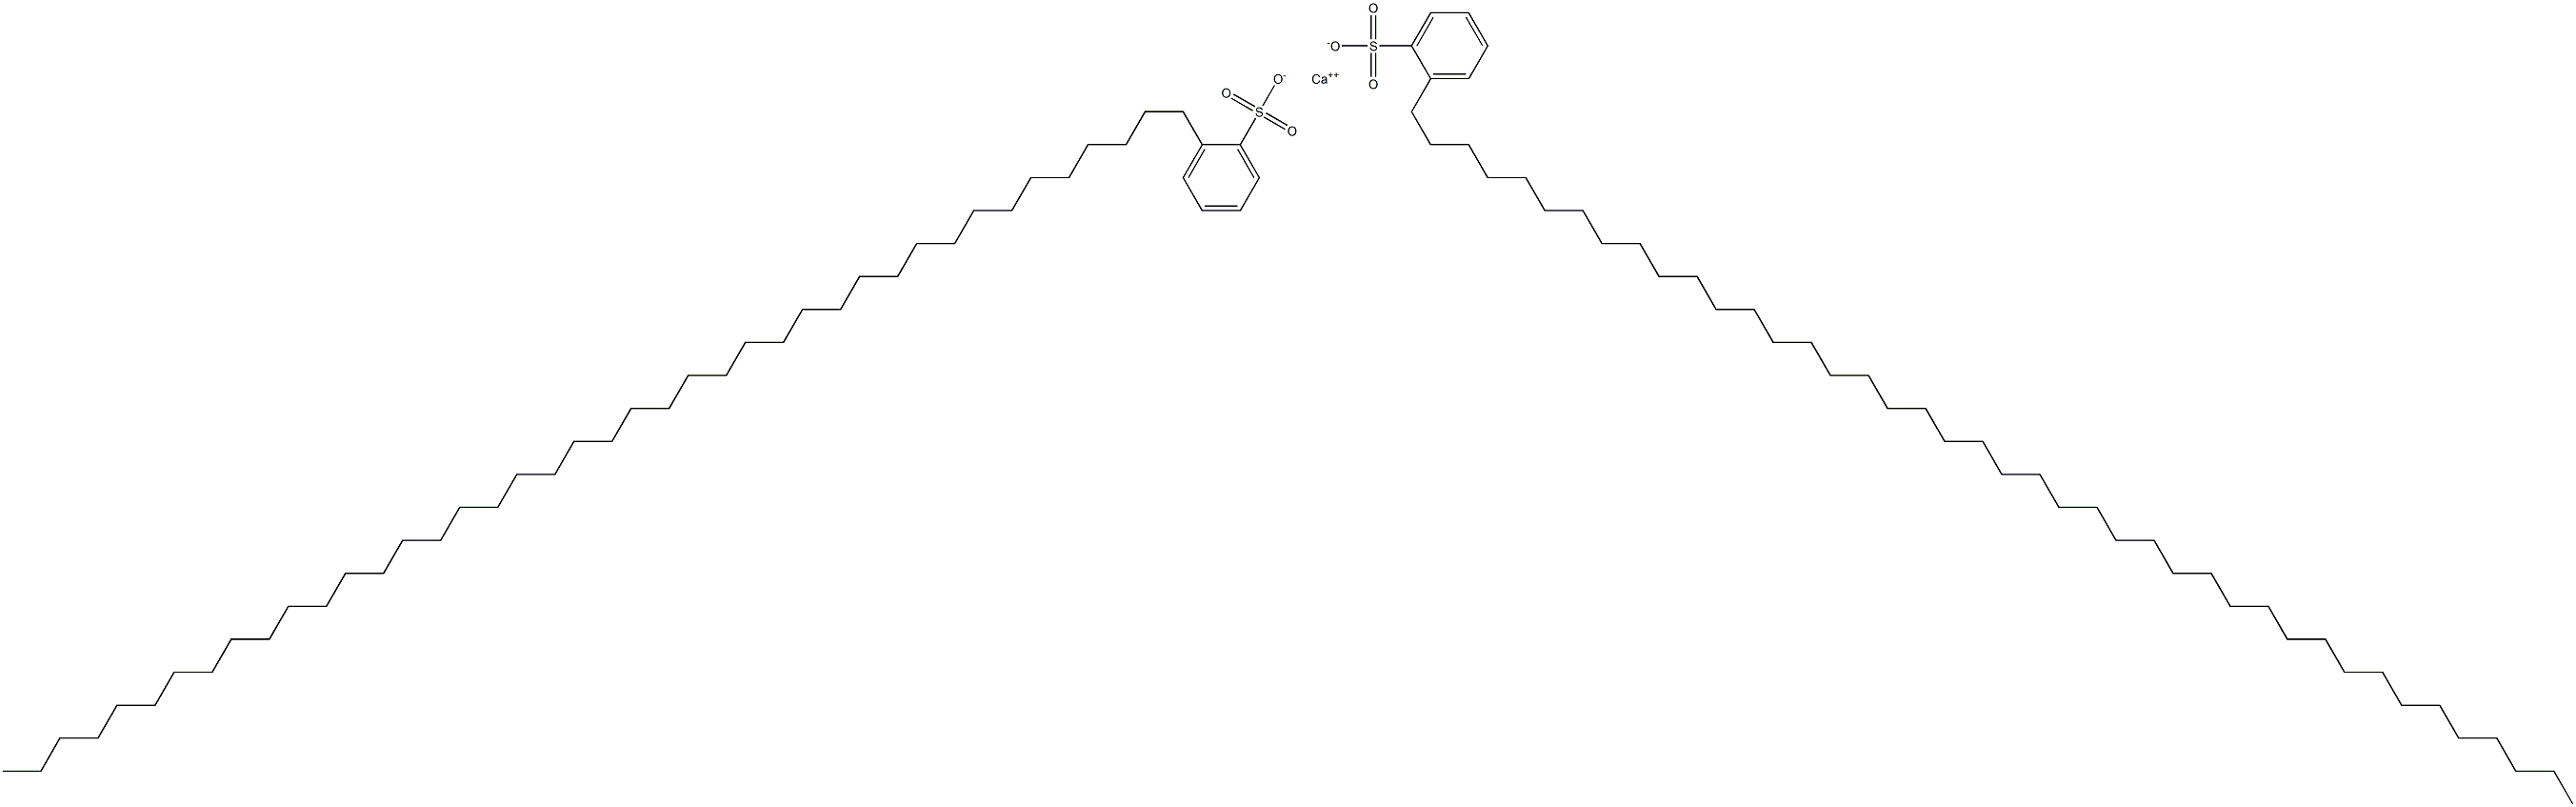 Bis[2-(dotetracontan-1-yl)benzenesulfonic acid]calcium salt|